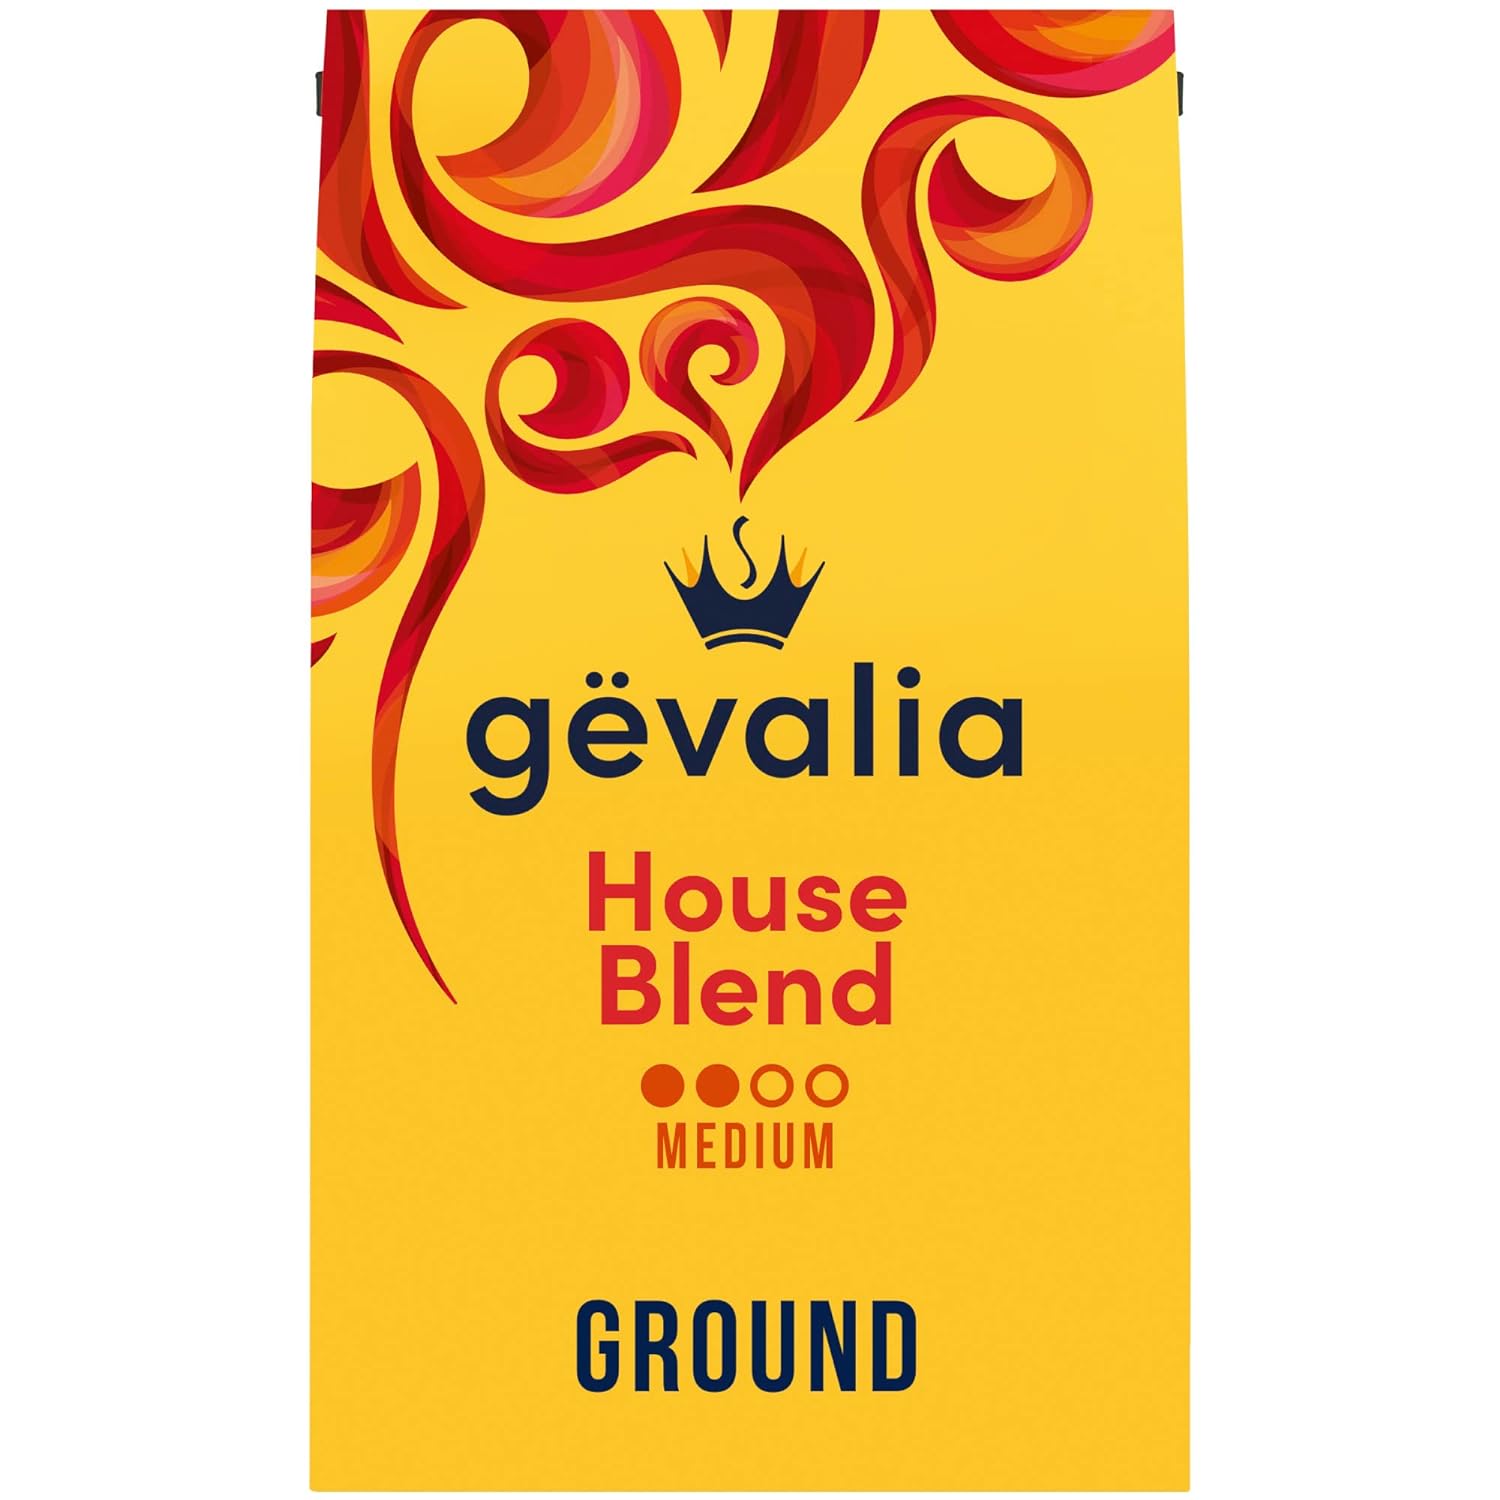 Gevalia House Blend Medium Roast 100% Arabica Ground Coffee, for a Keto and Low Carb Lifestyle (20 oz Bag)